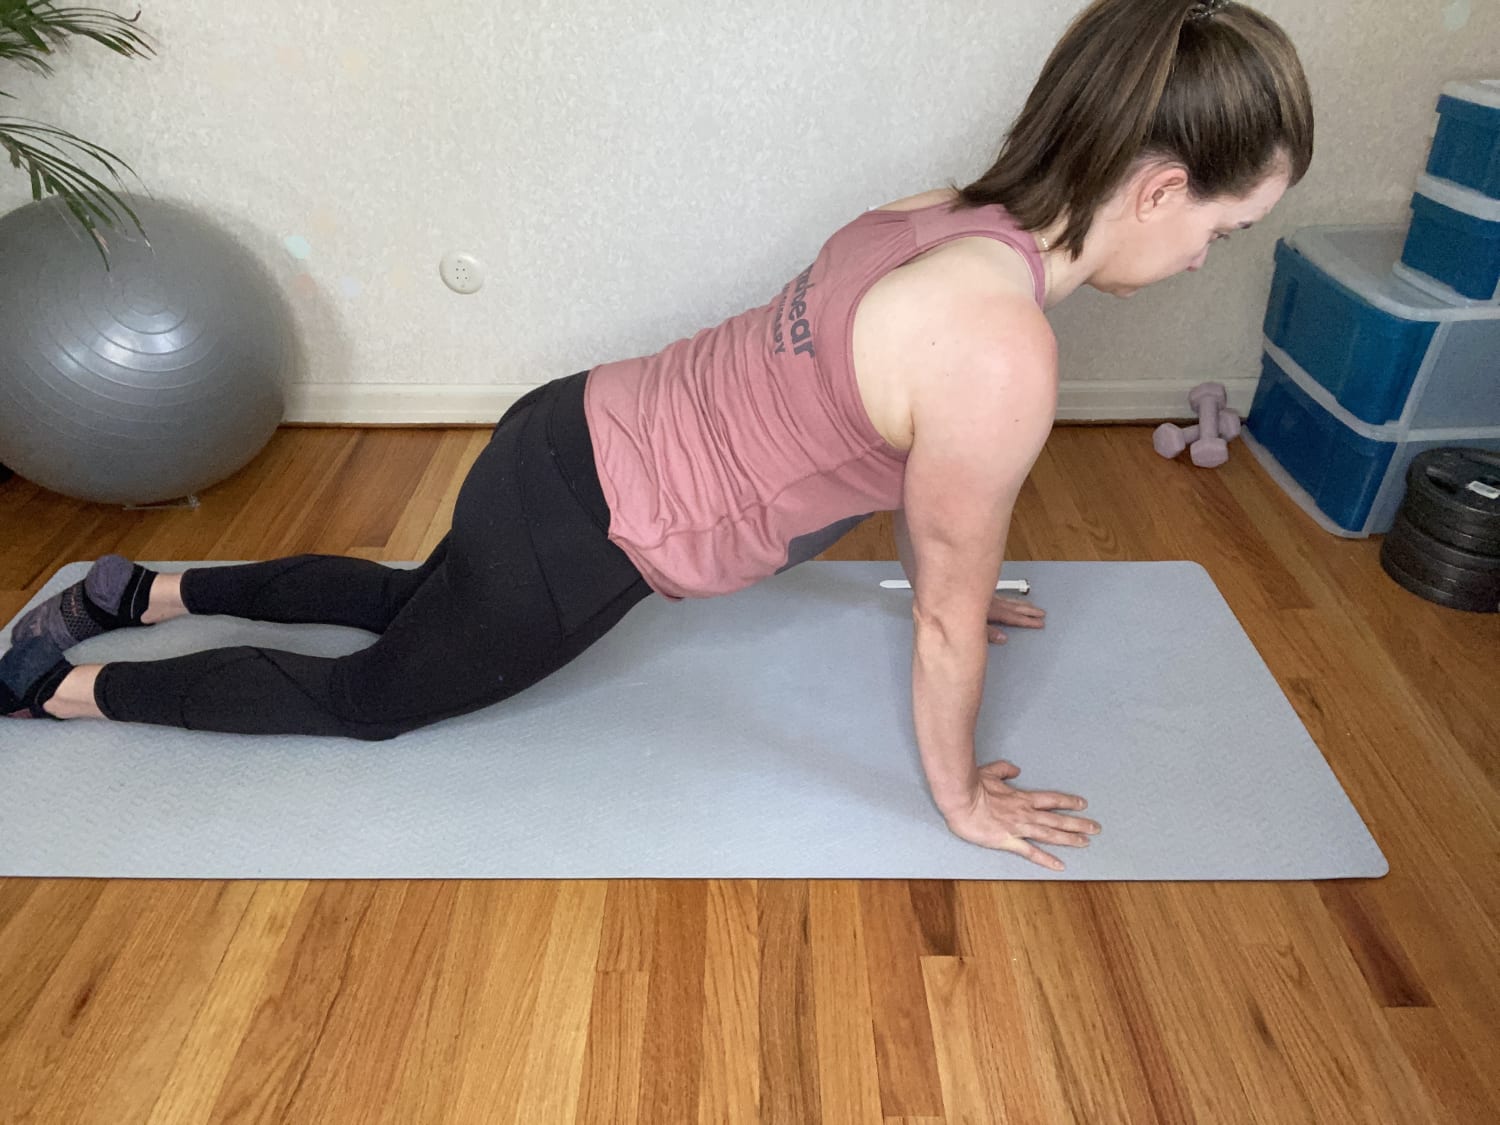 Postnatal Yoga With Diastasis Recti Exercises Postpartum - YouTube